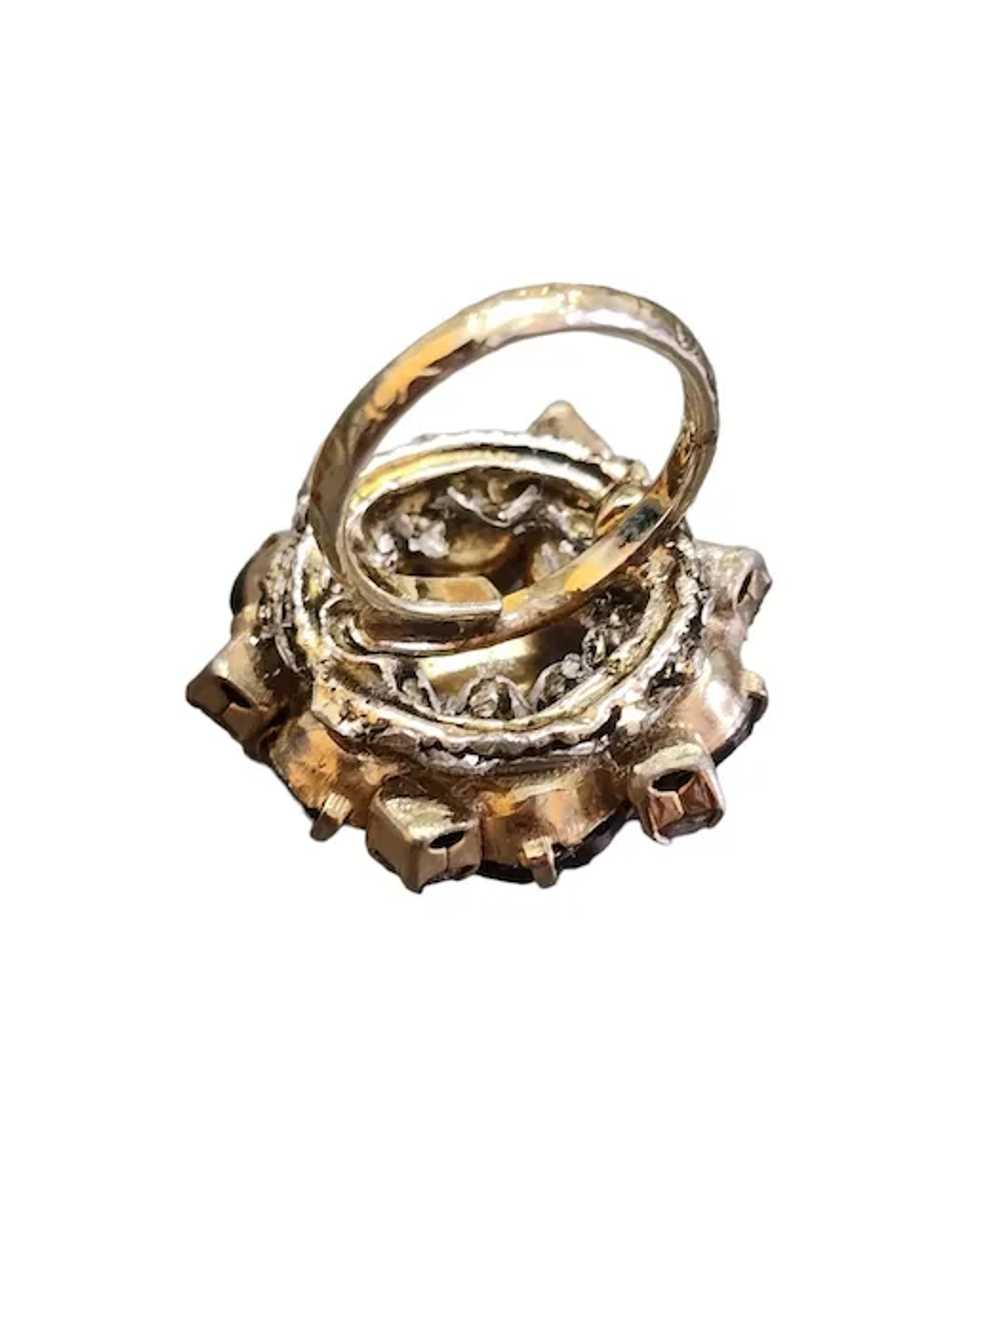 Vintage Rhinestone Adjustable Ring (A3724) - image 4